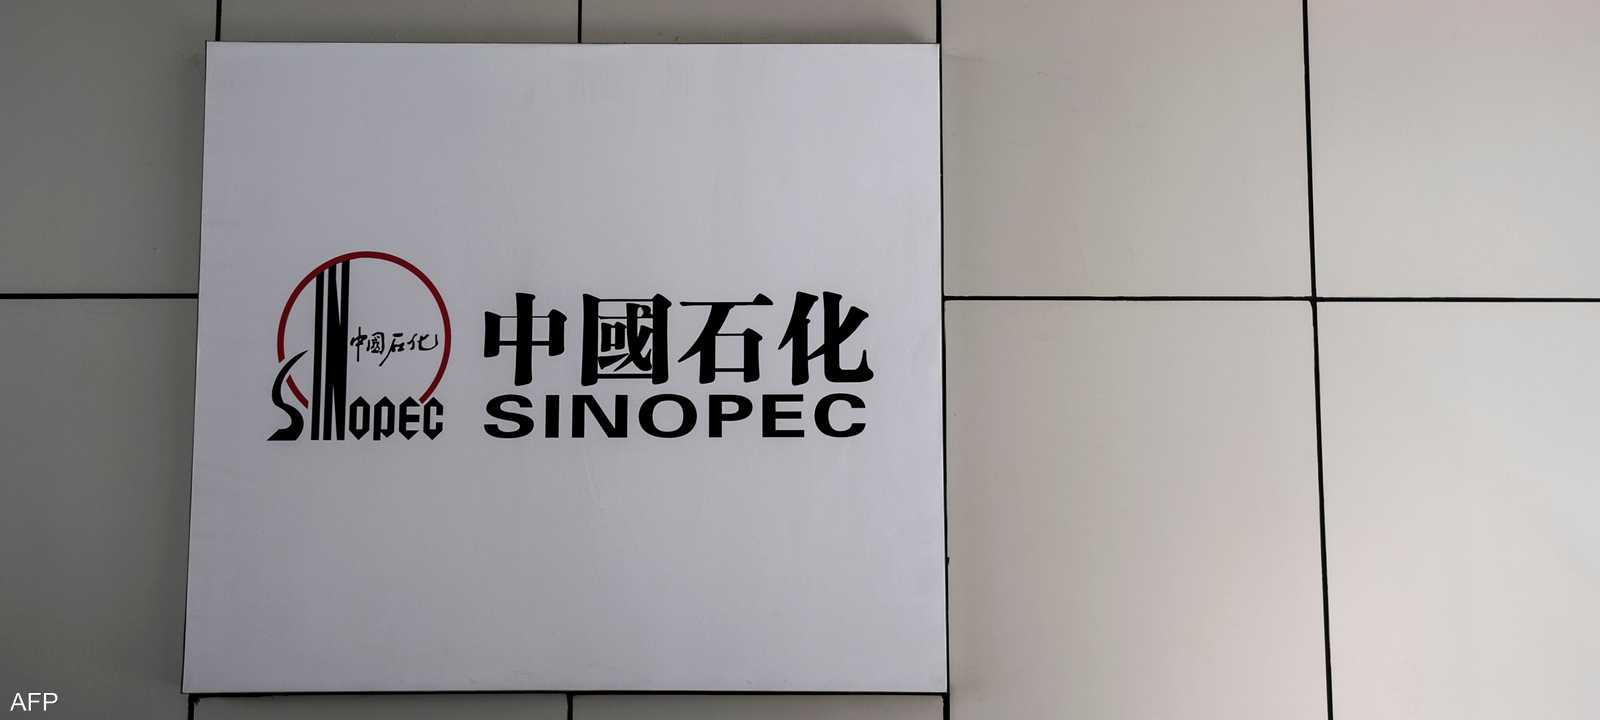 شركة سينوبك الصينية